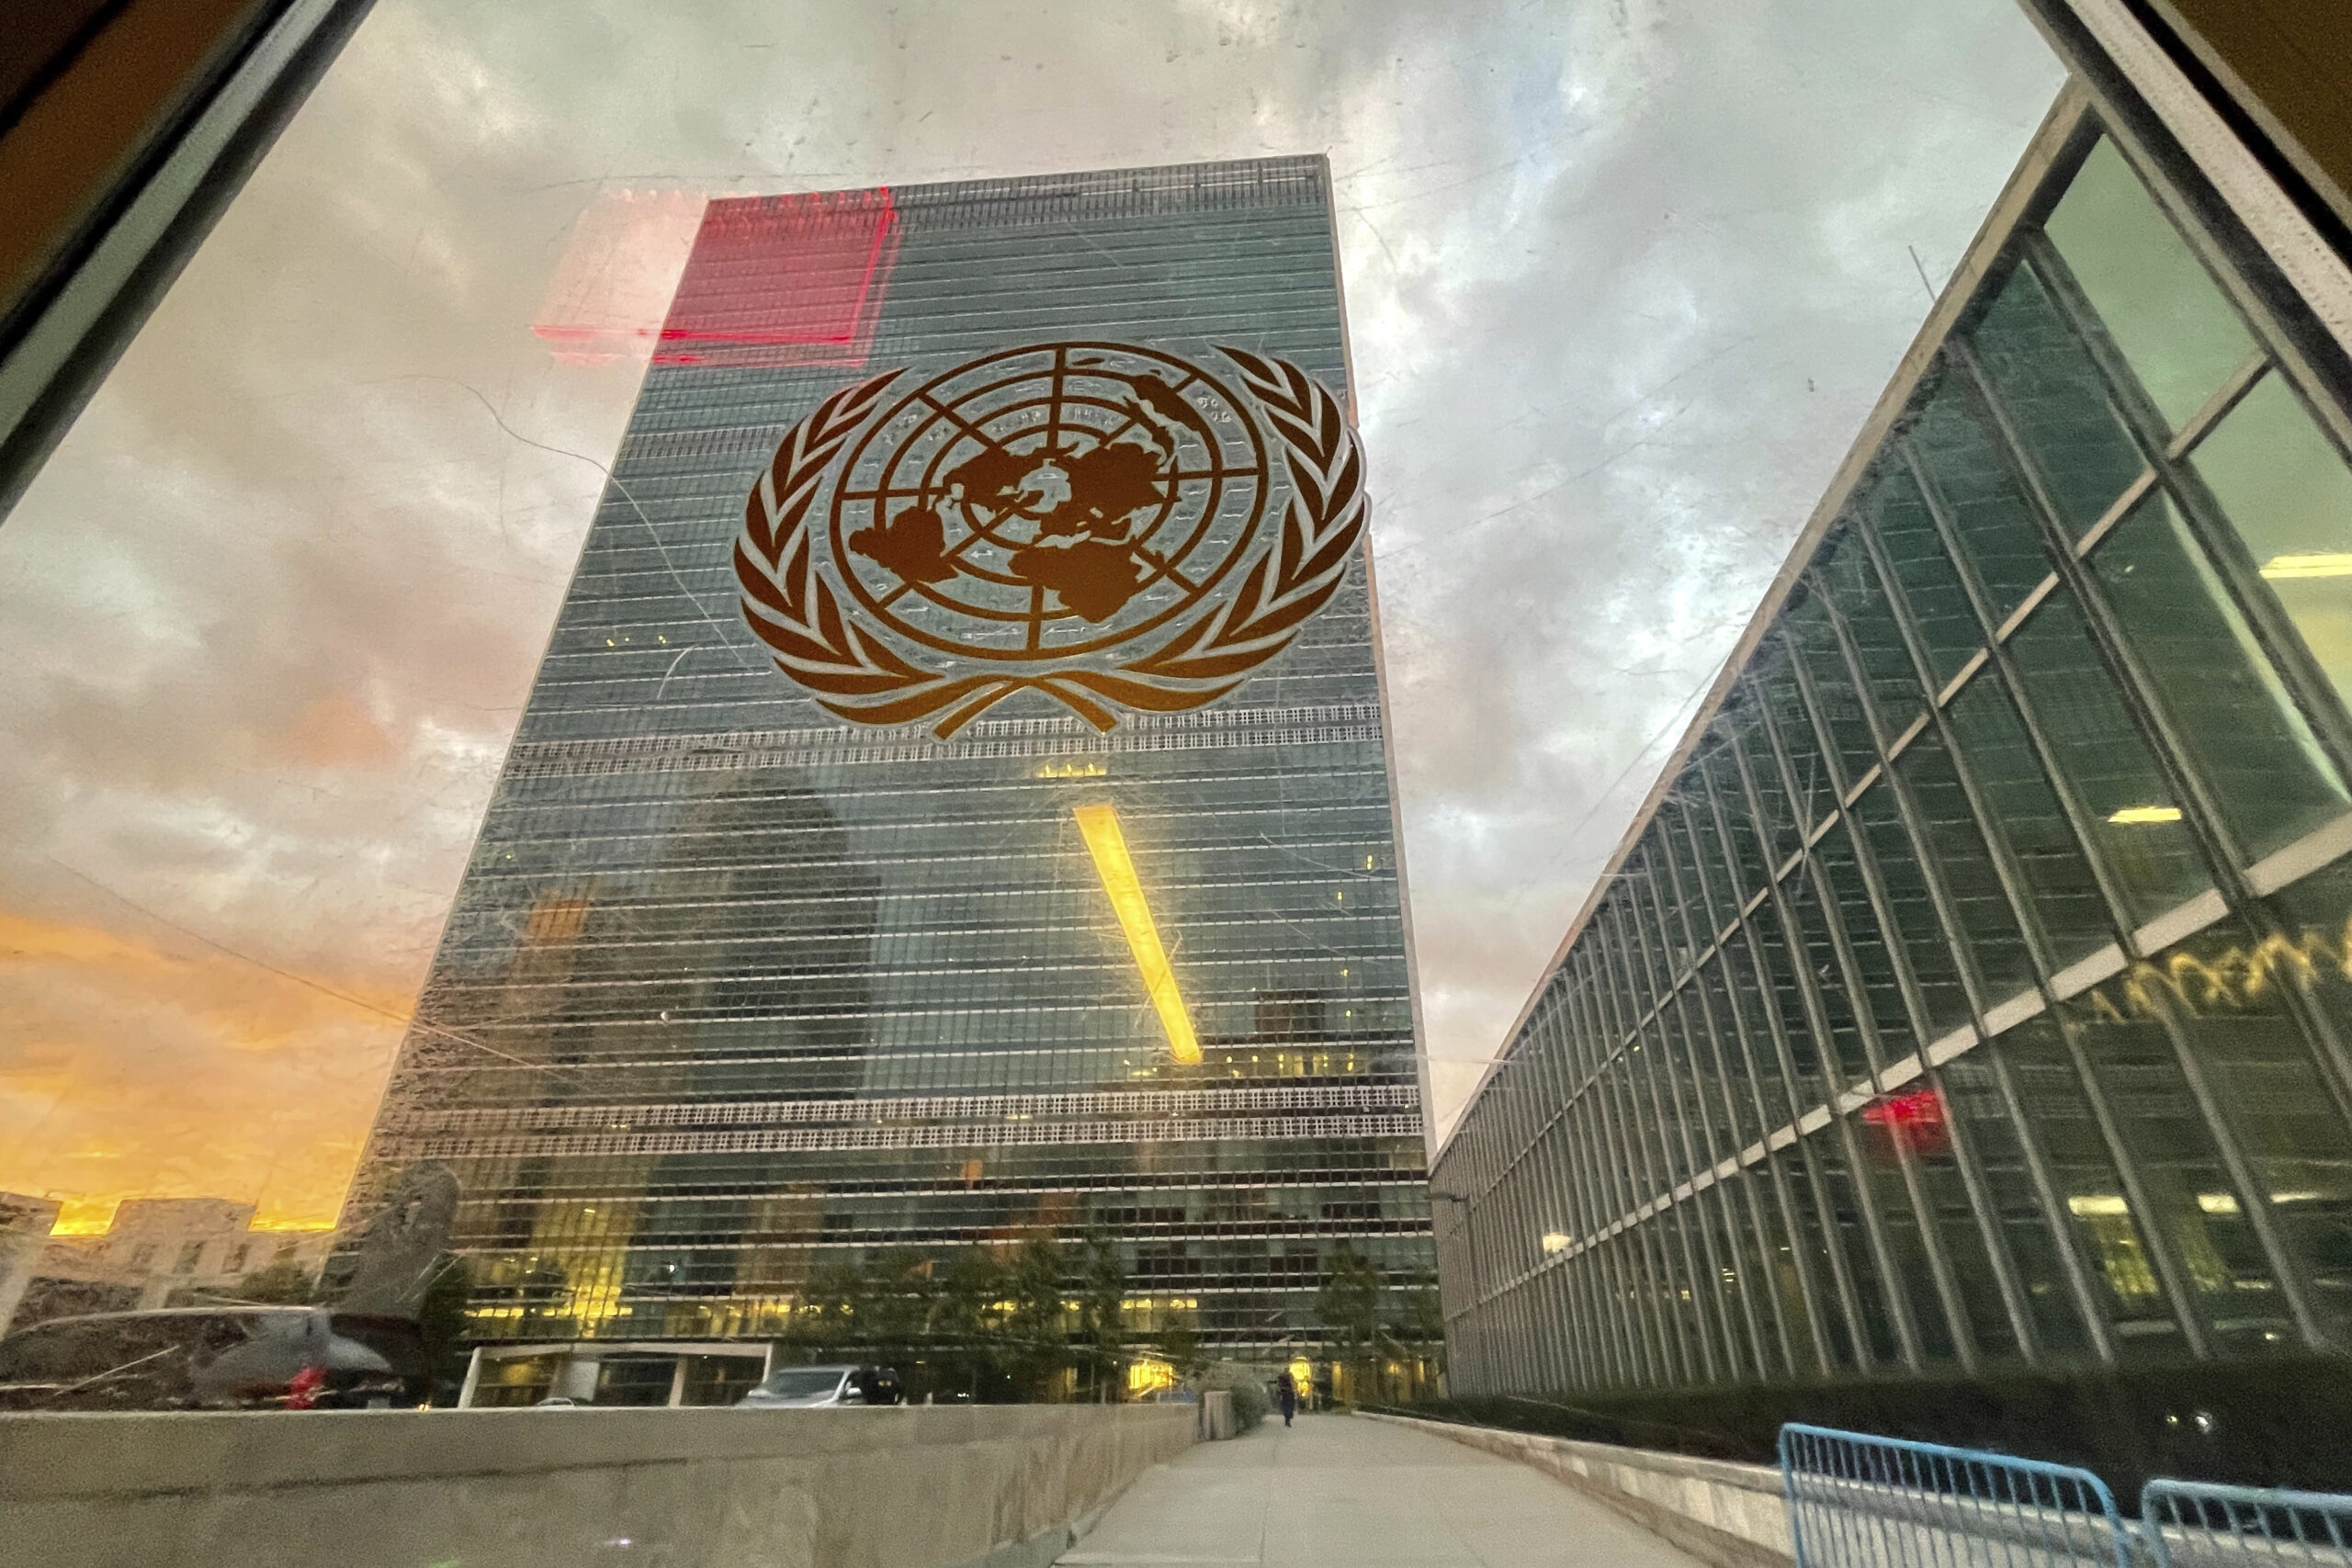 Συμβούλιο Ασφαλείας ΟΗΕ: Στην προεδρία η Ρωσία – «Xαστούκι στη διεθνή κοινότητα» λέει η Ουκρανία